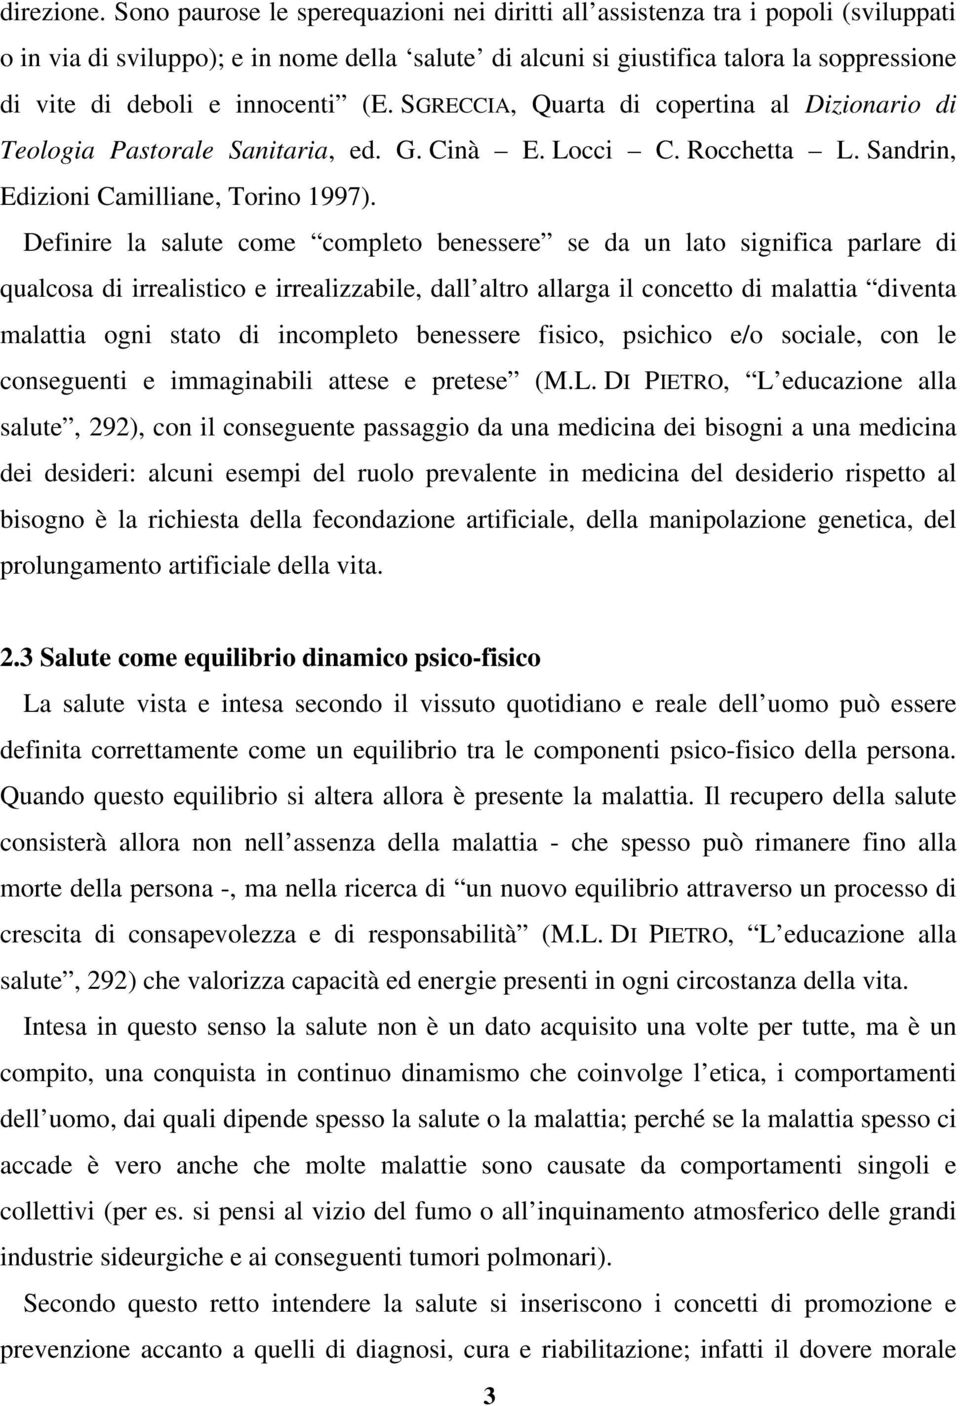 innocenti (E. SGRECCIA, Quarta di copertina al Dizionario di Teologia Pastorale Sanitaria, ed. G. Cinà E. Locci C. Rocchetta L. Sandrin, Edizioni Camilliane, Torino 1997).